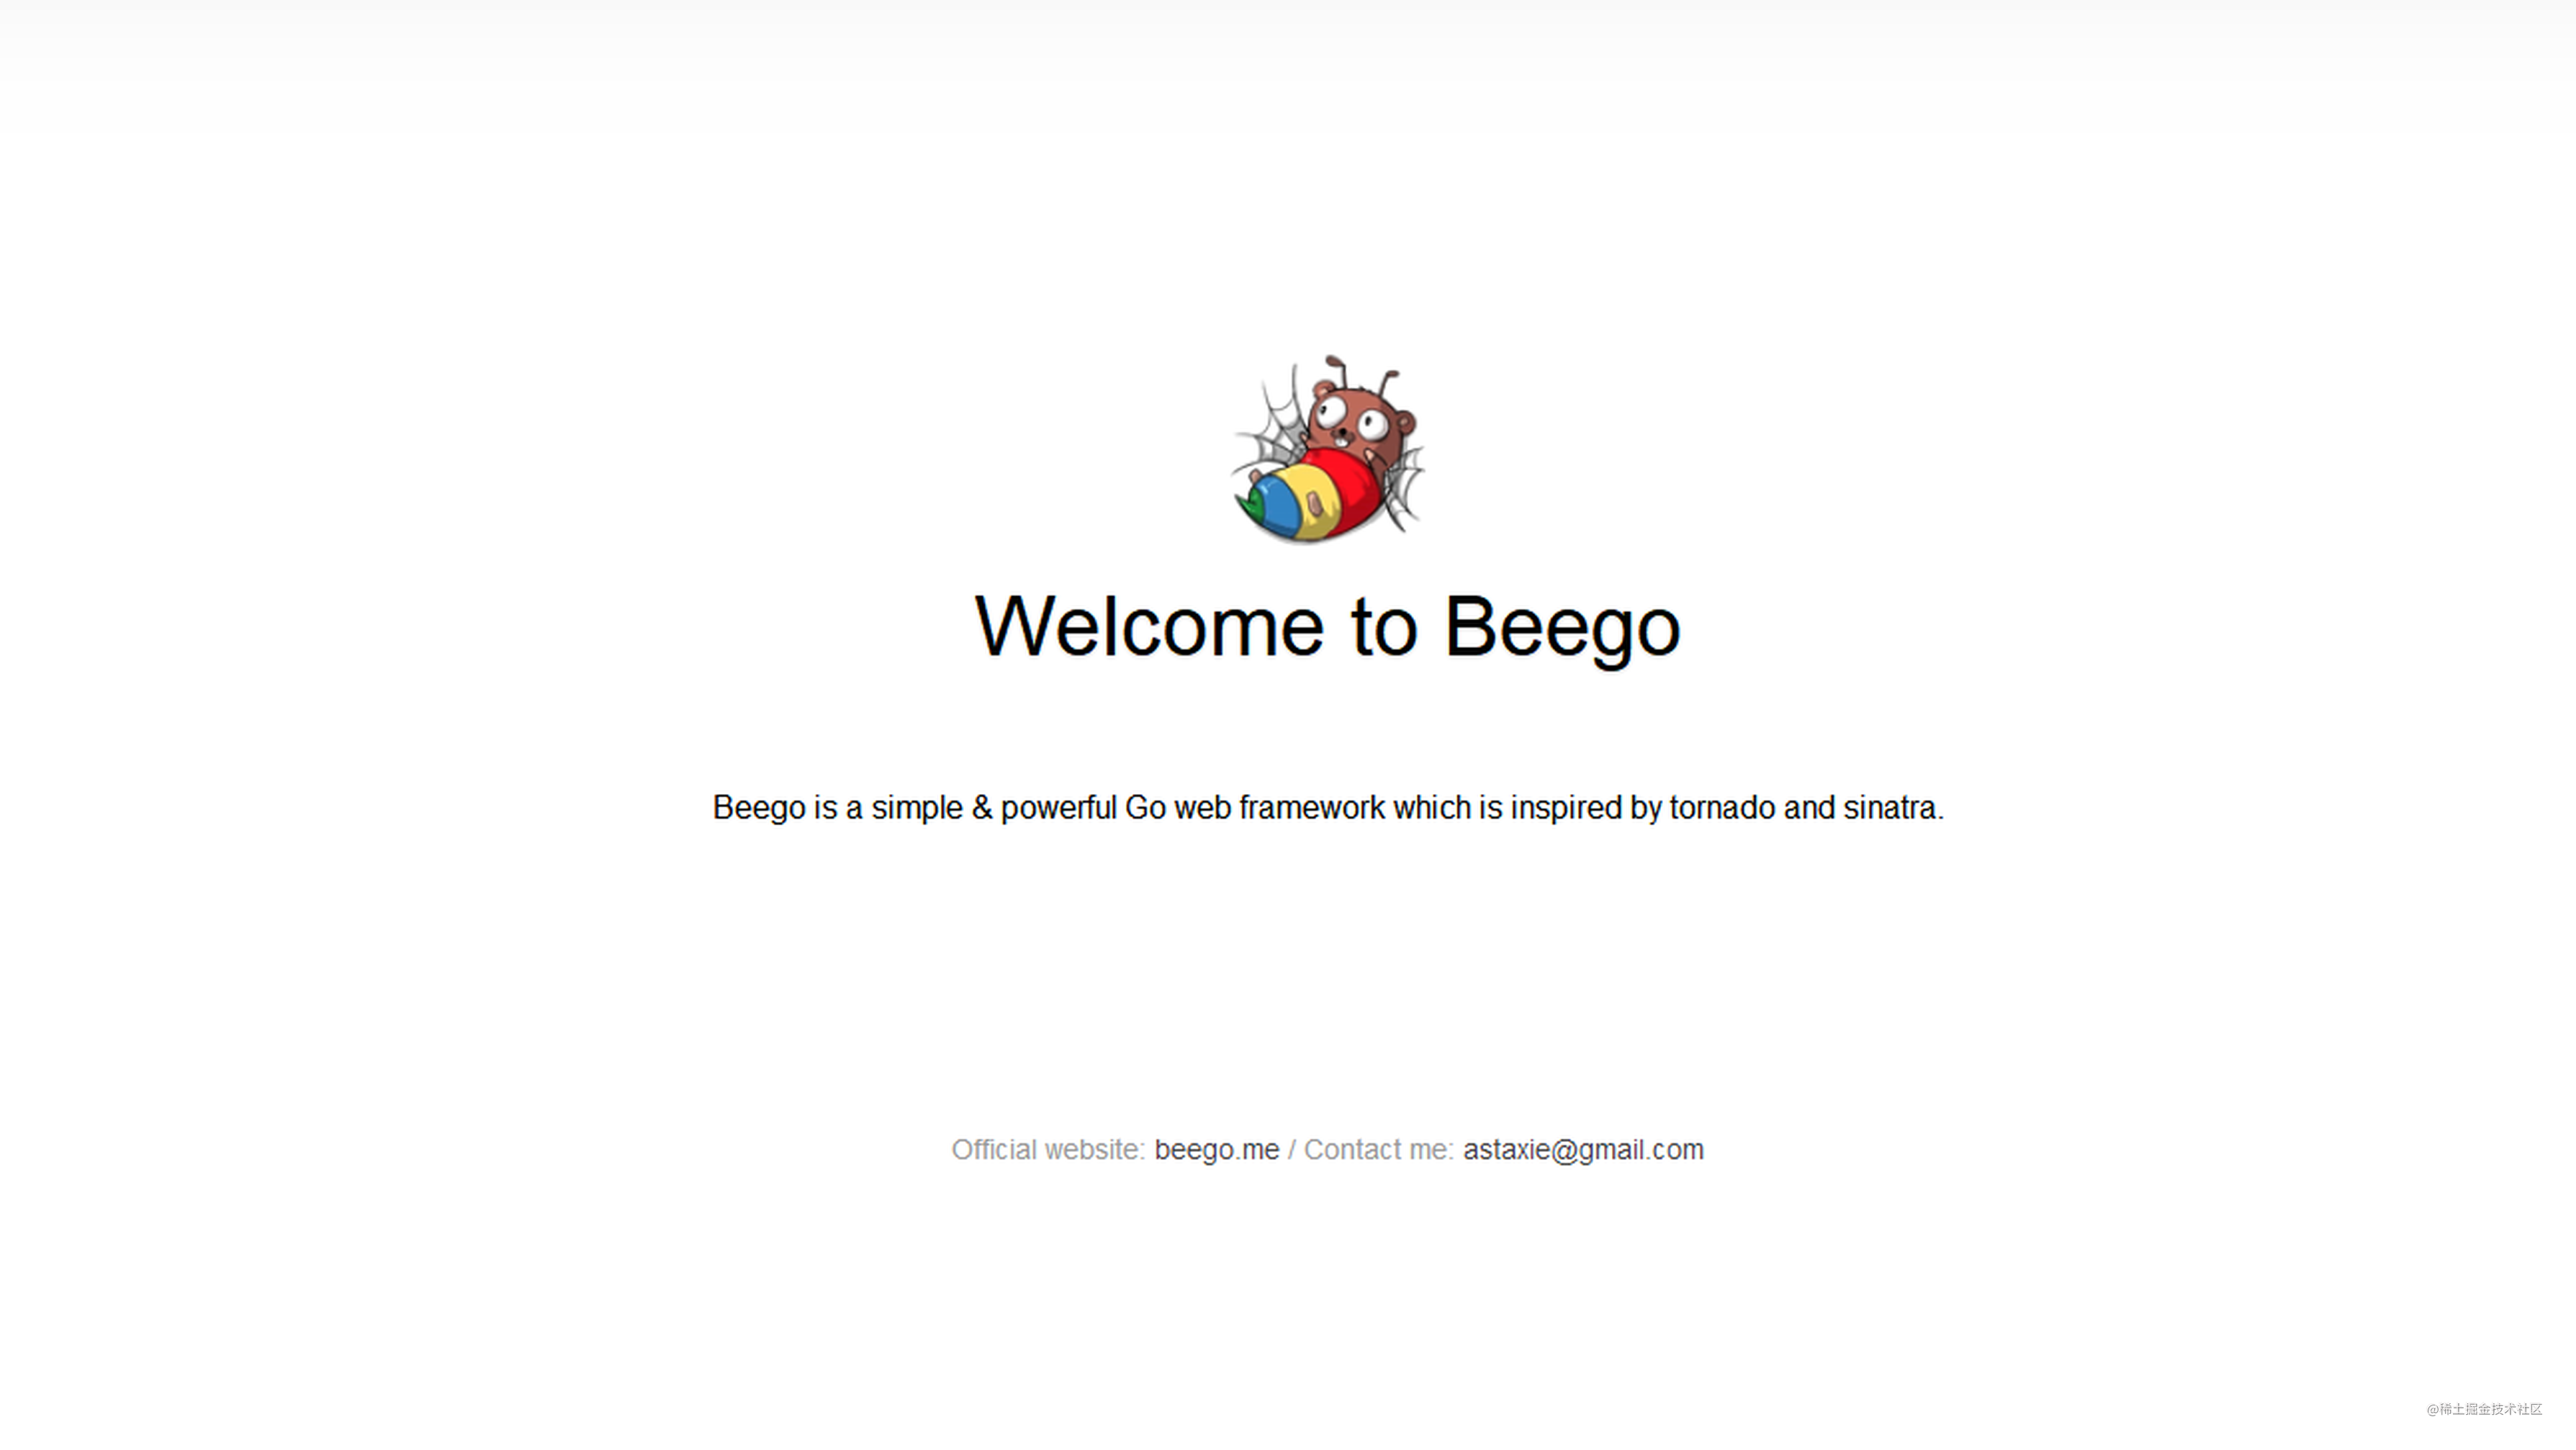 想学Go Web？先来看看如何搭建一个beego项目和实现简单功能吧！